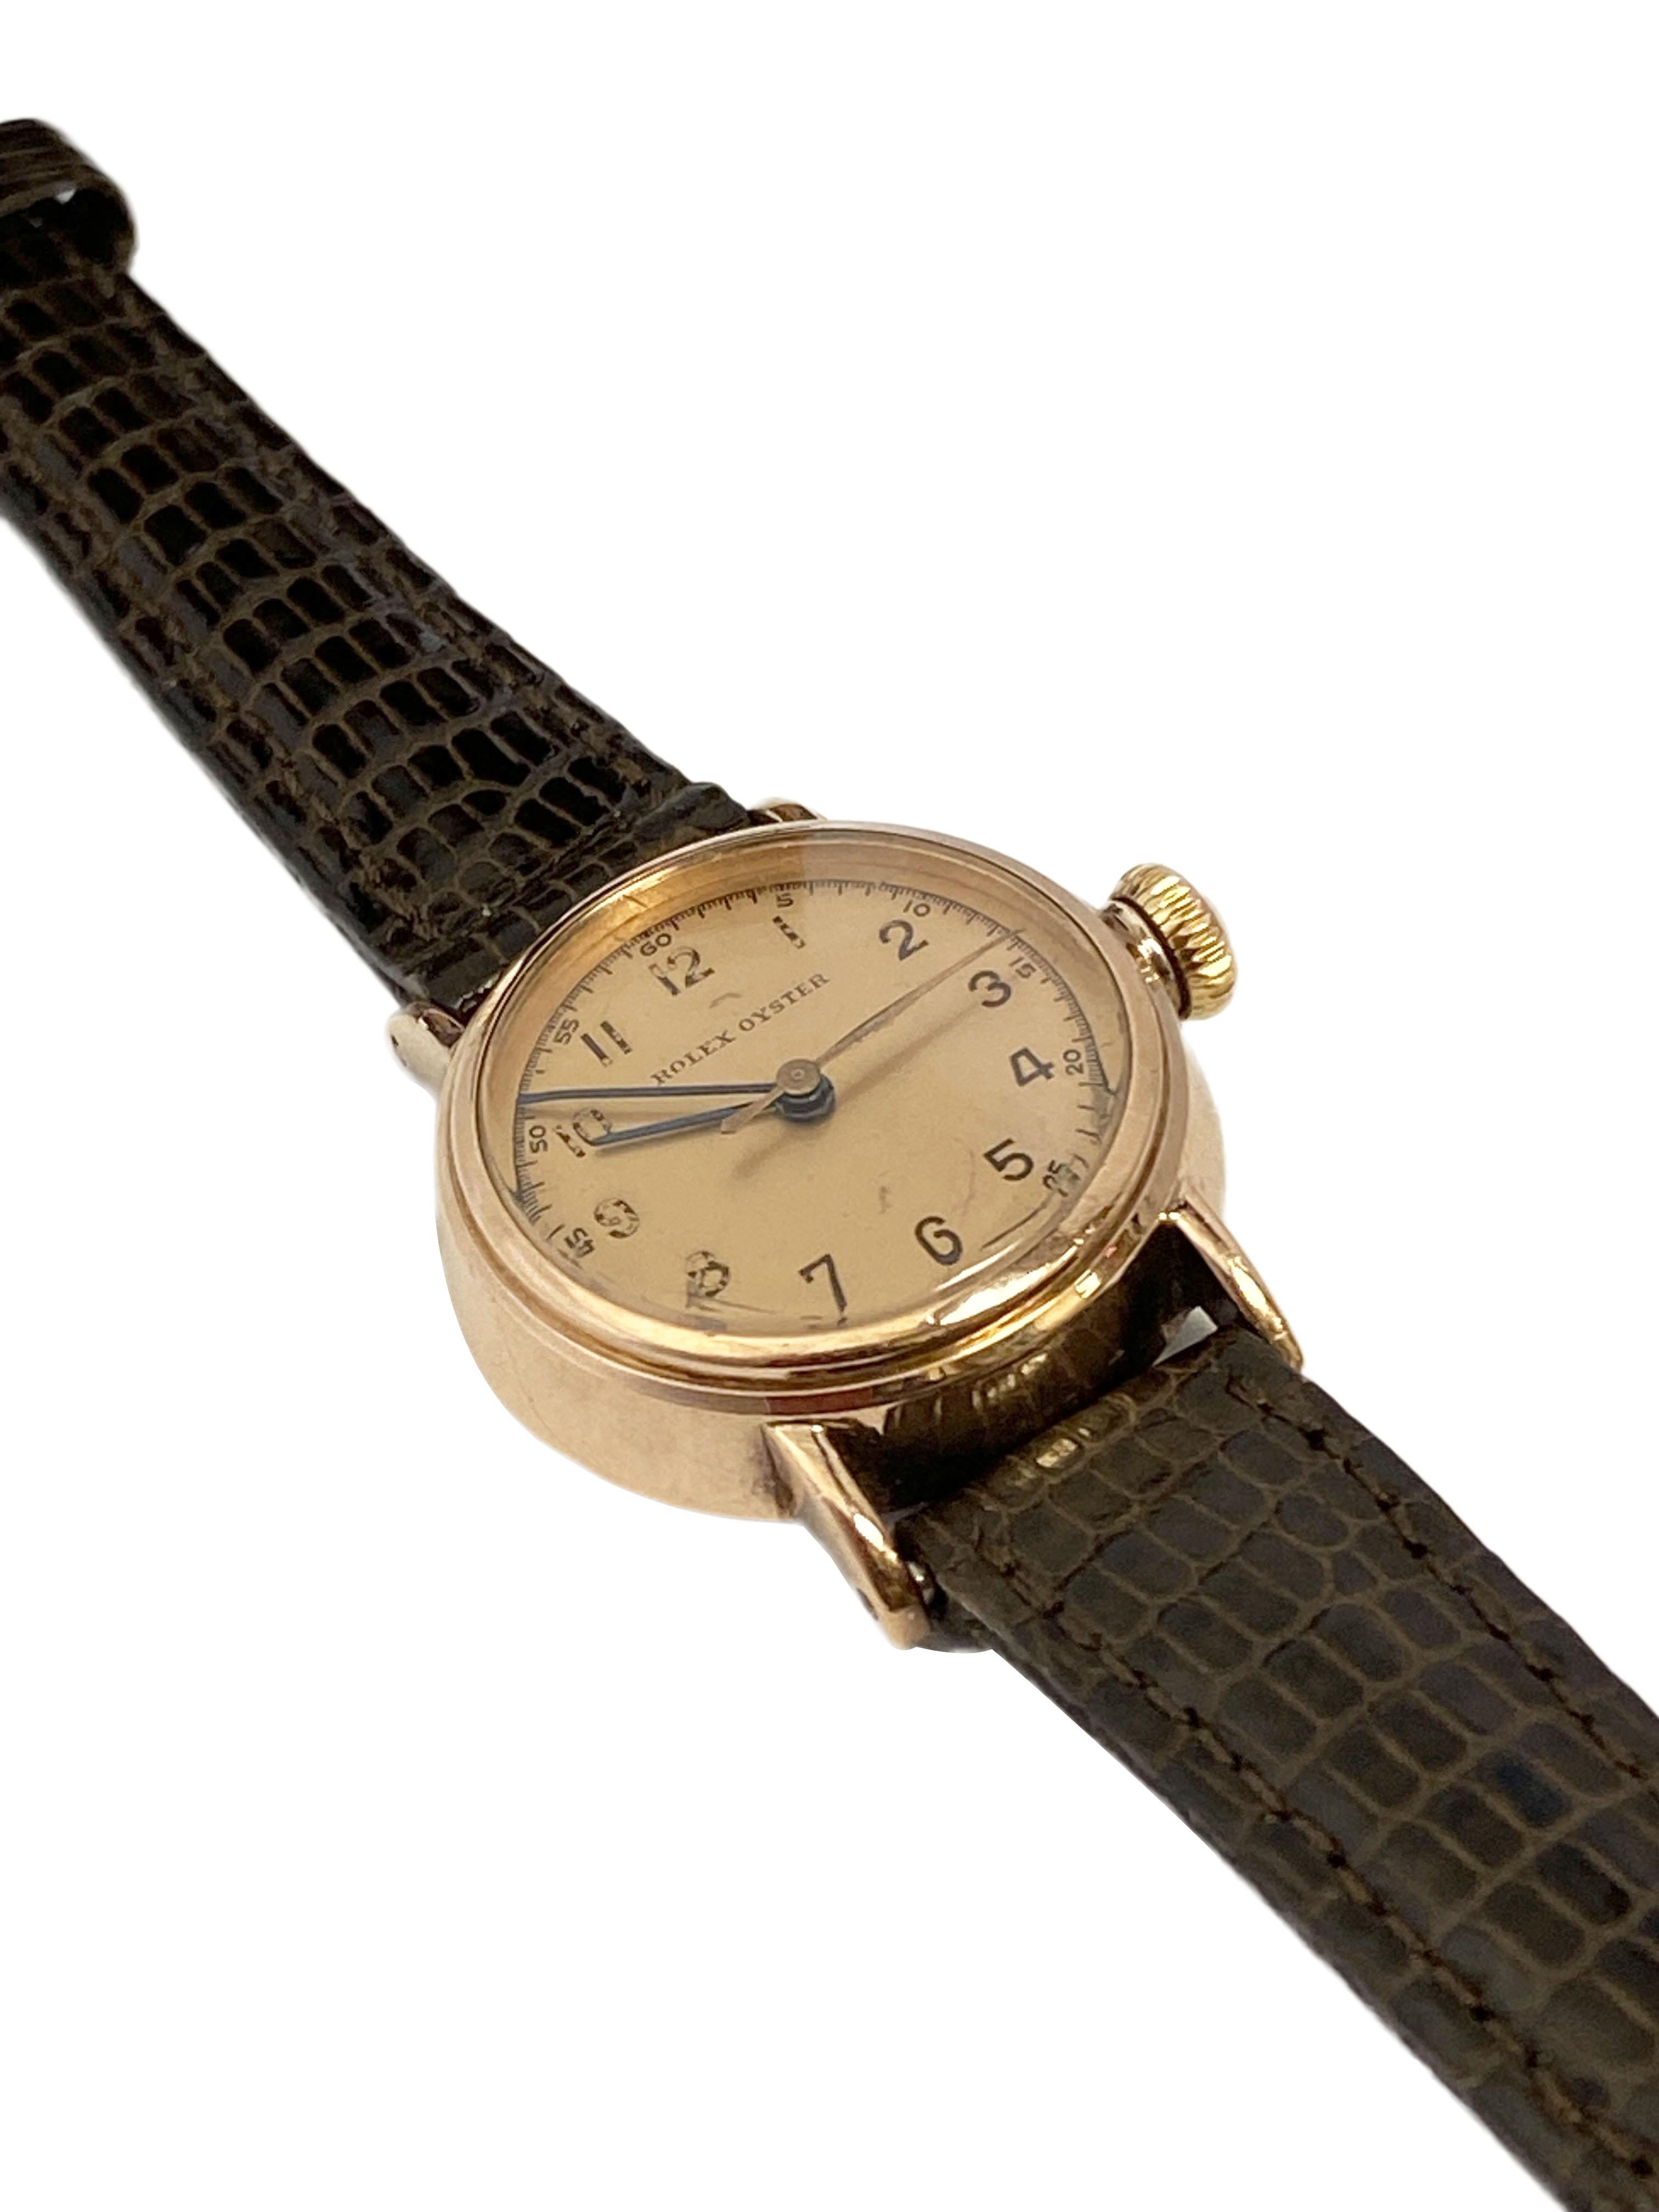 Montre-bracelet Rolex Oyster des années CIRCA, 24 M.M. Mouvement mécanique à remontage manuel, couronne d'origine vissée avec logo Oyster, cadran d'origine de couleur rose, aiguille des secondes à balayage. Nouveau bracelet en lézard brun de